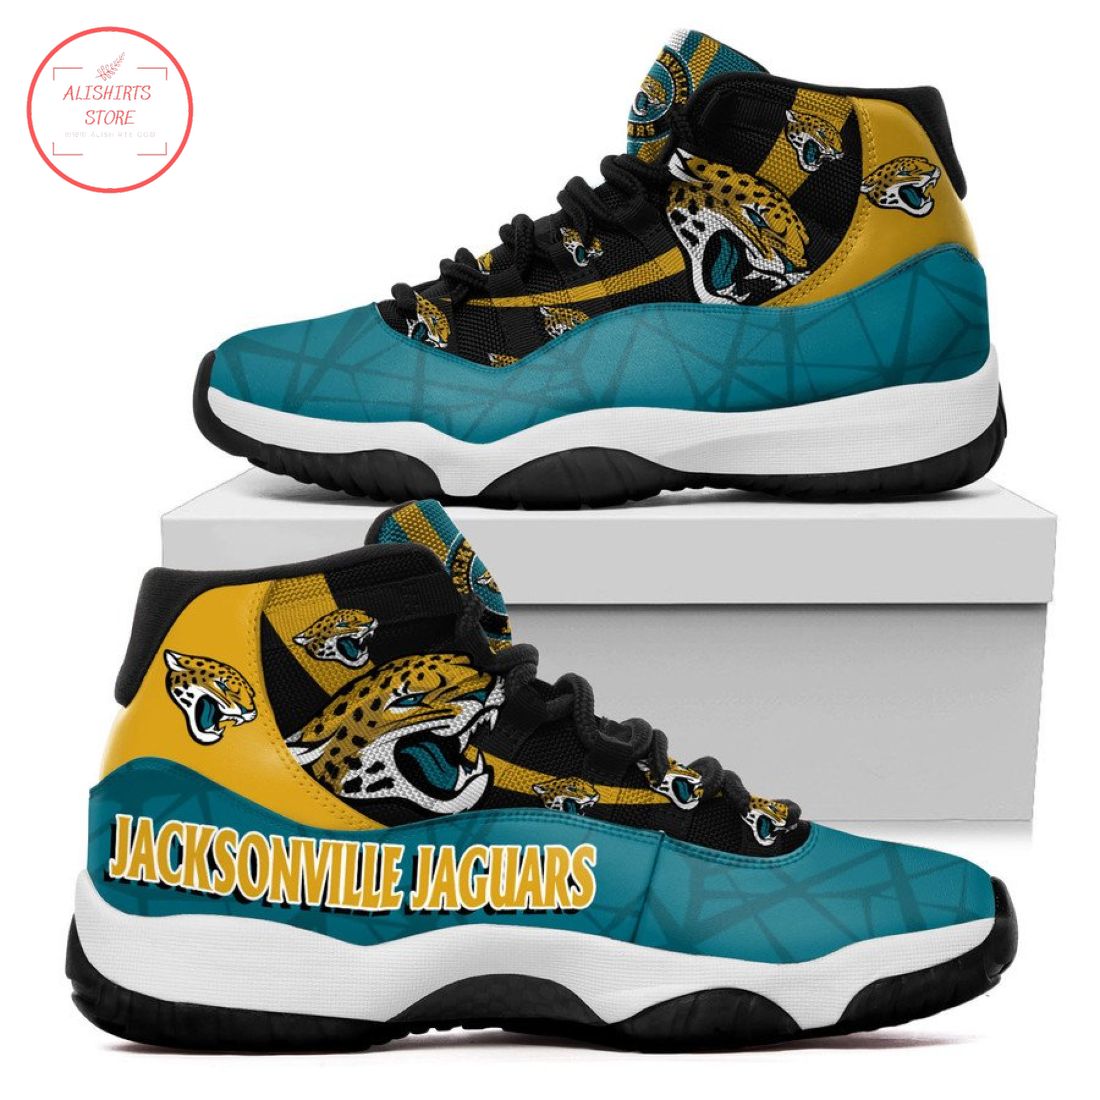 NFL Jacksonville Jaguars New Air Jordan 11 Sneakers Shoes